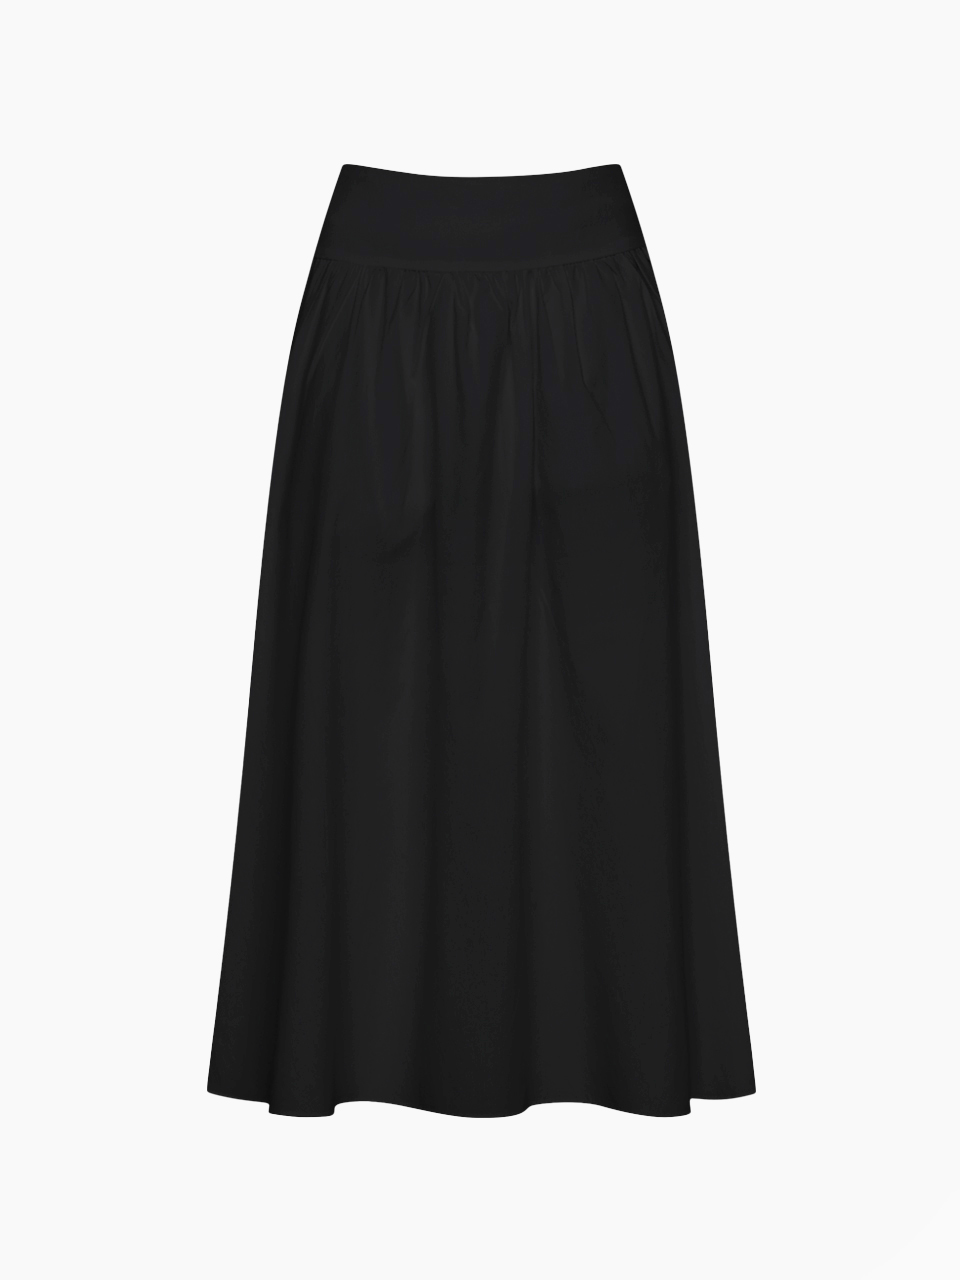 flare long skirt - black